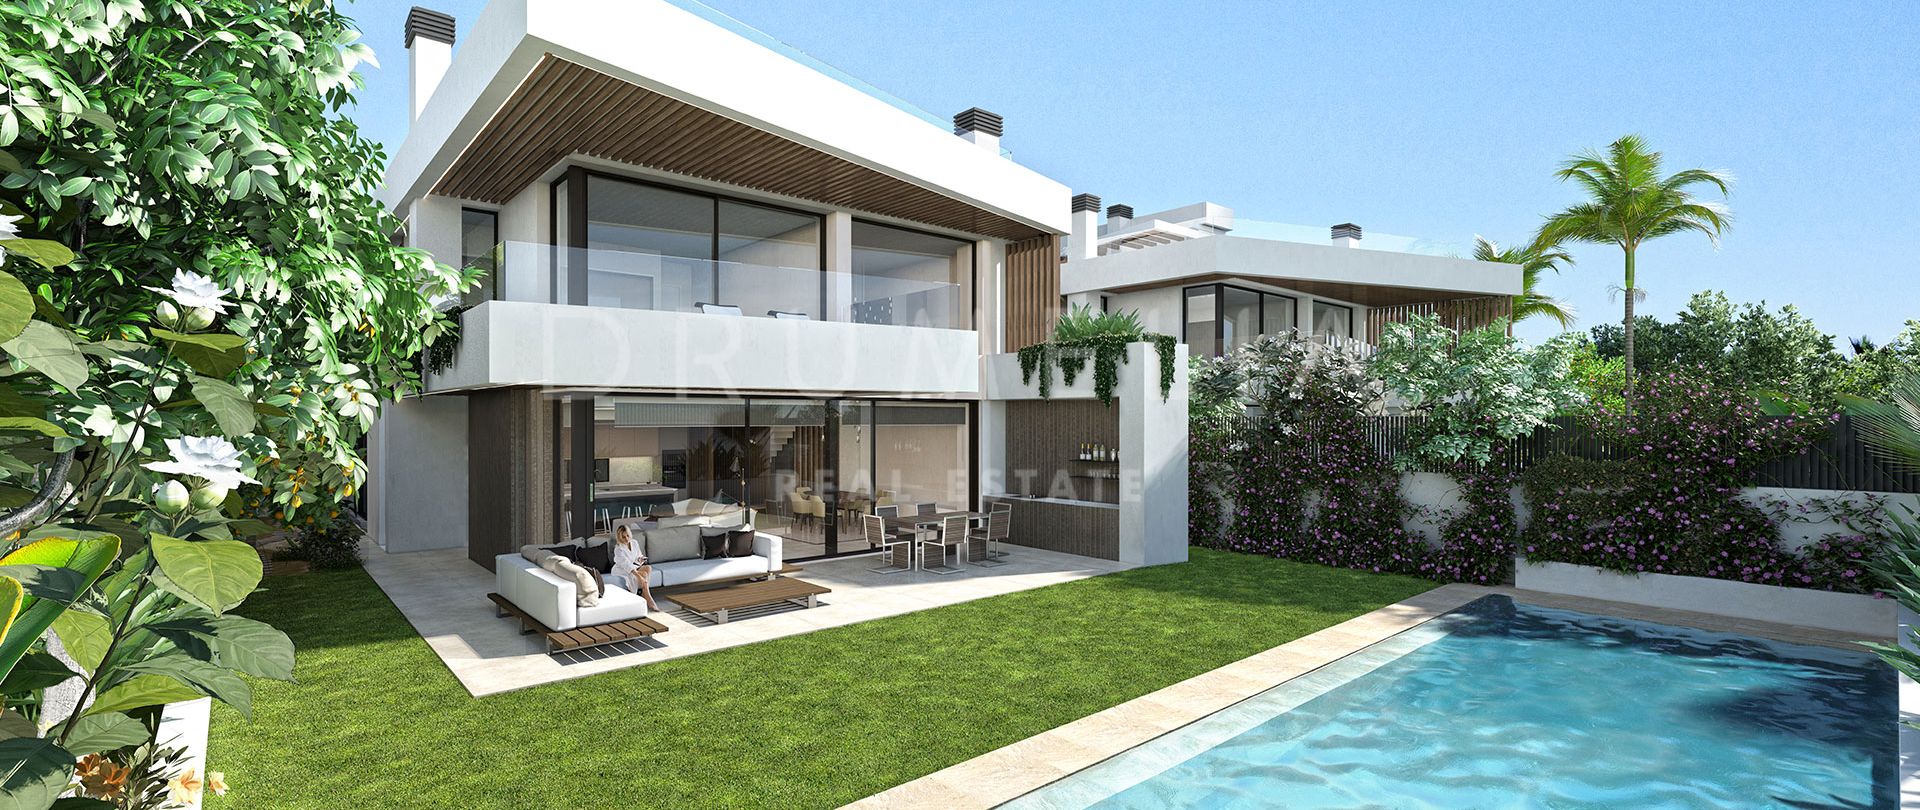 Modernes High-End-Villenprojekt mit luxuriöser Ausstattung und avantgardistischem Touch in Puerto Banus, Marbella